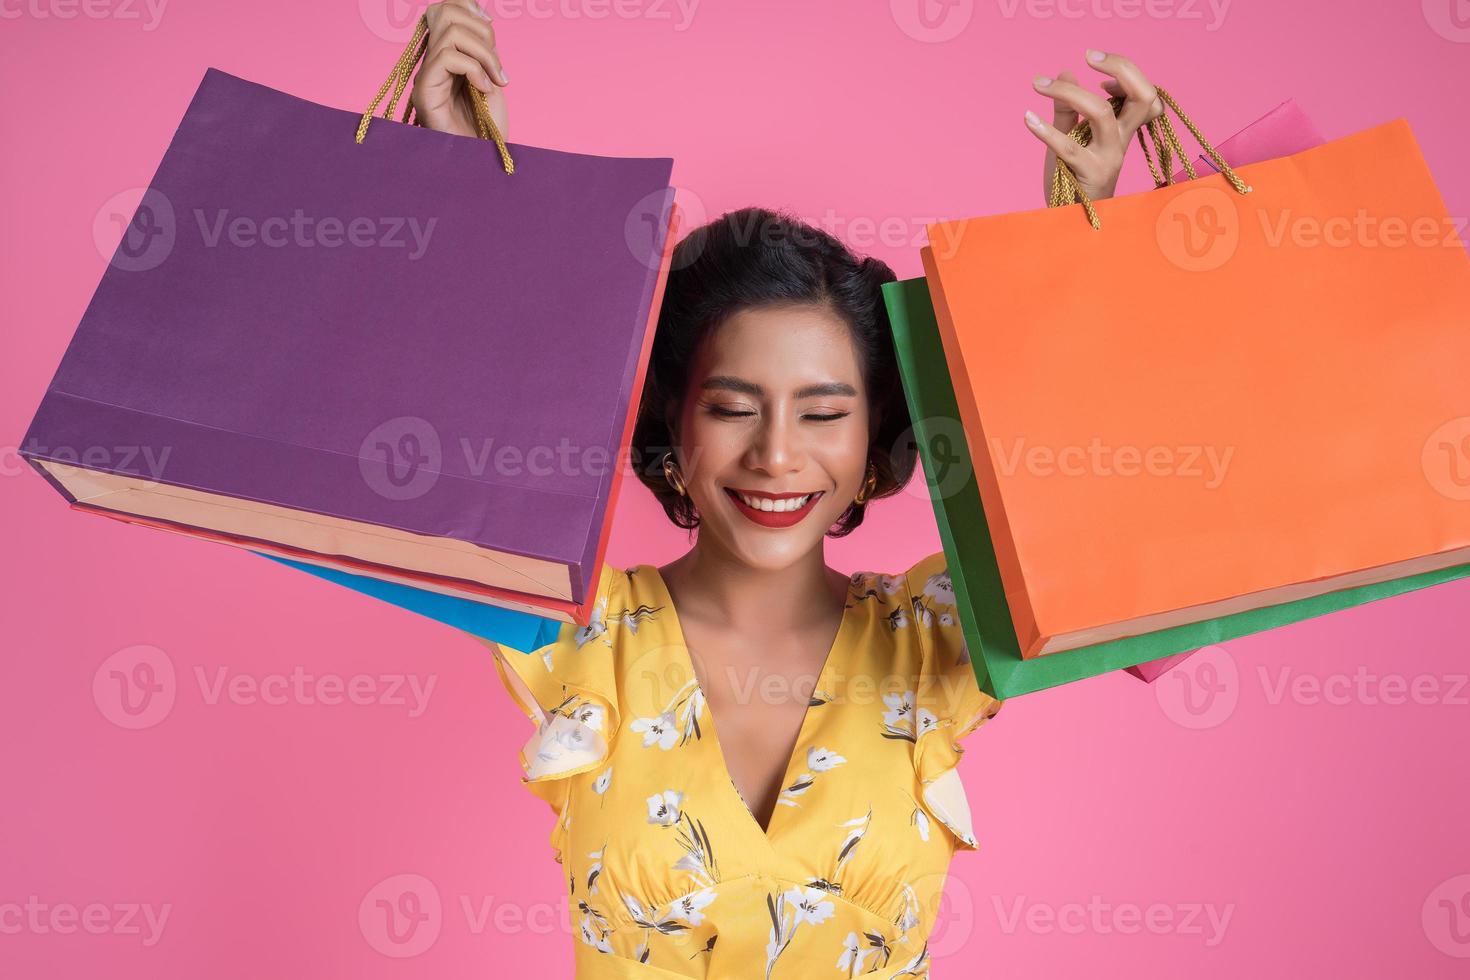 bella donna asiatica che tiene le borse della spesa colorate foto